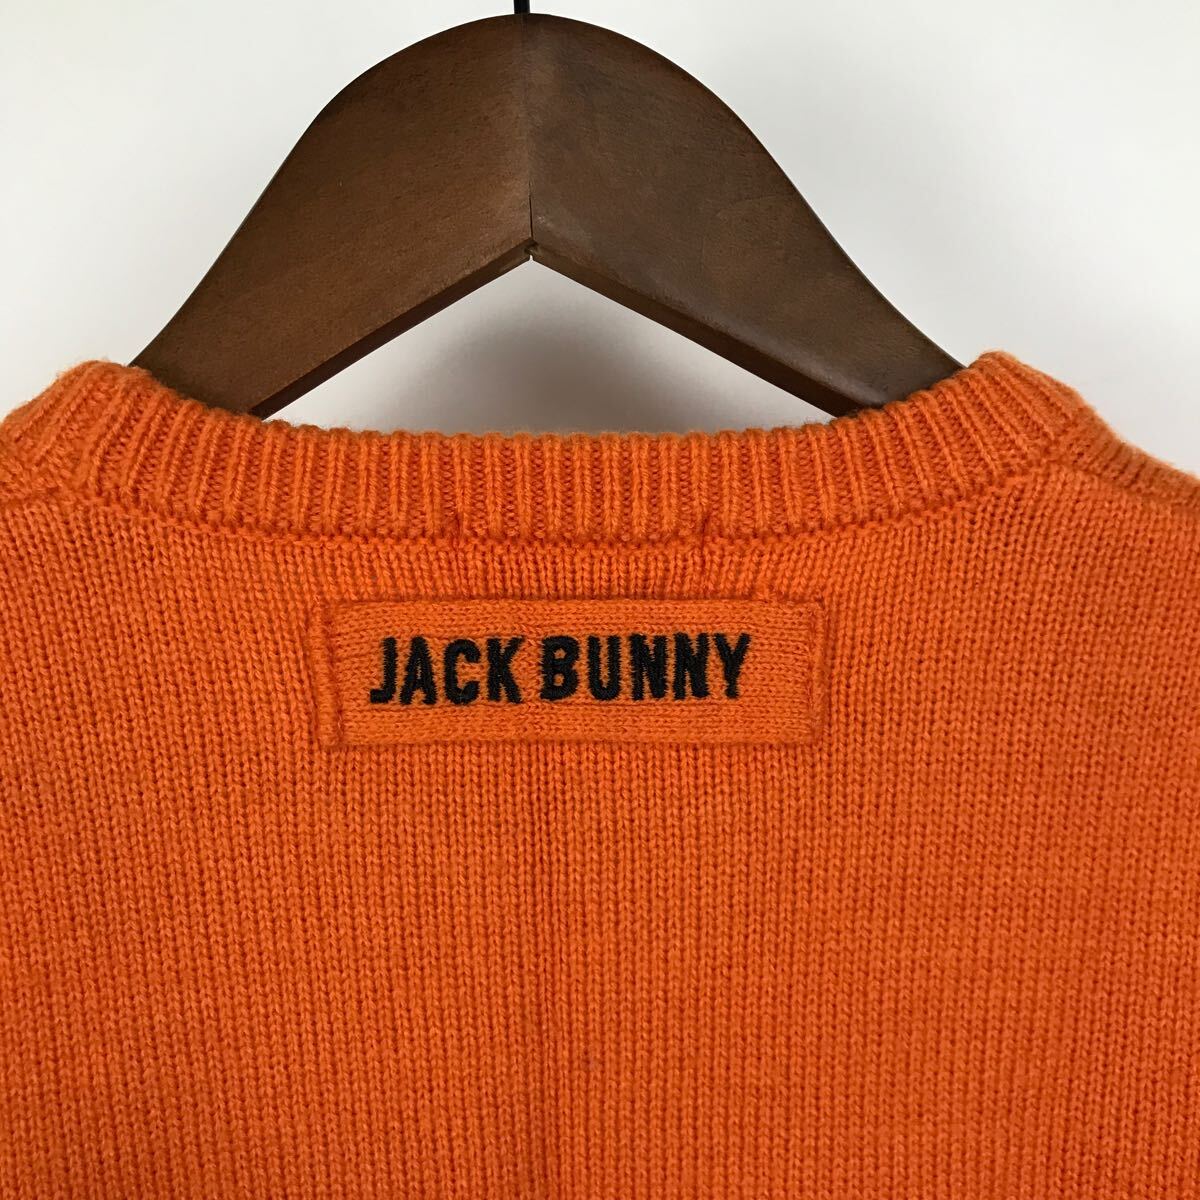 JACK BUNNY ジャックバニー 長袖 ニット セーター キッズ 150サイズ オレンジ カジュアル スポーツ トレーニング golf ゴルフ ウェア FA325_画像8